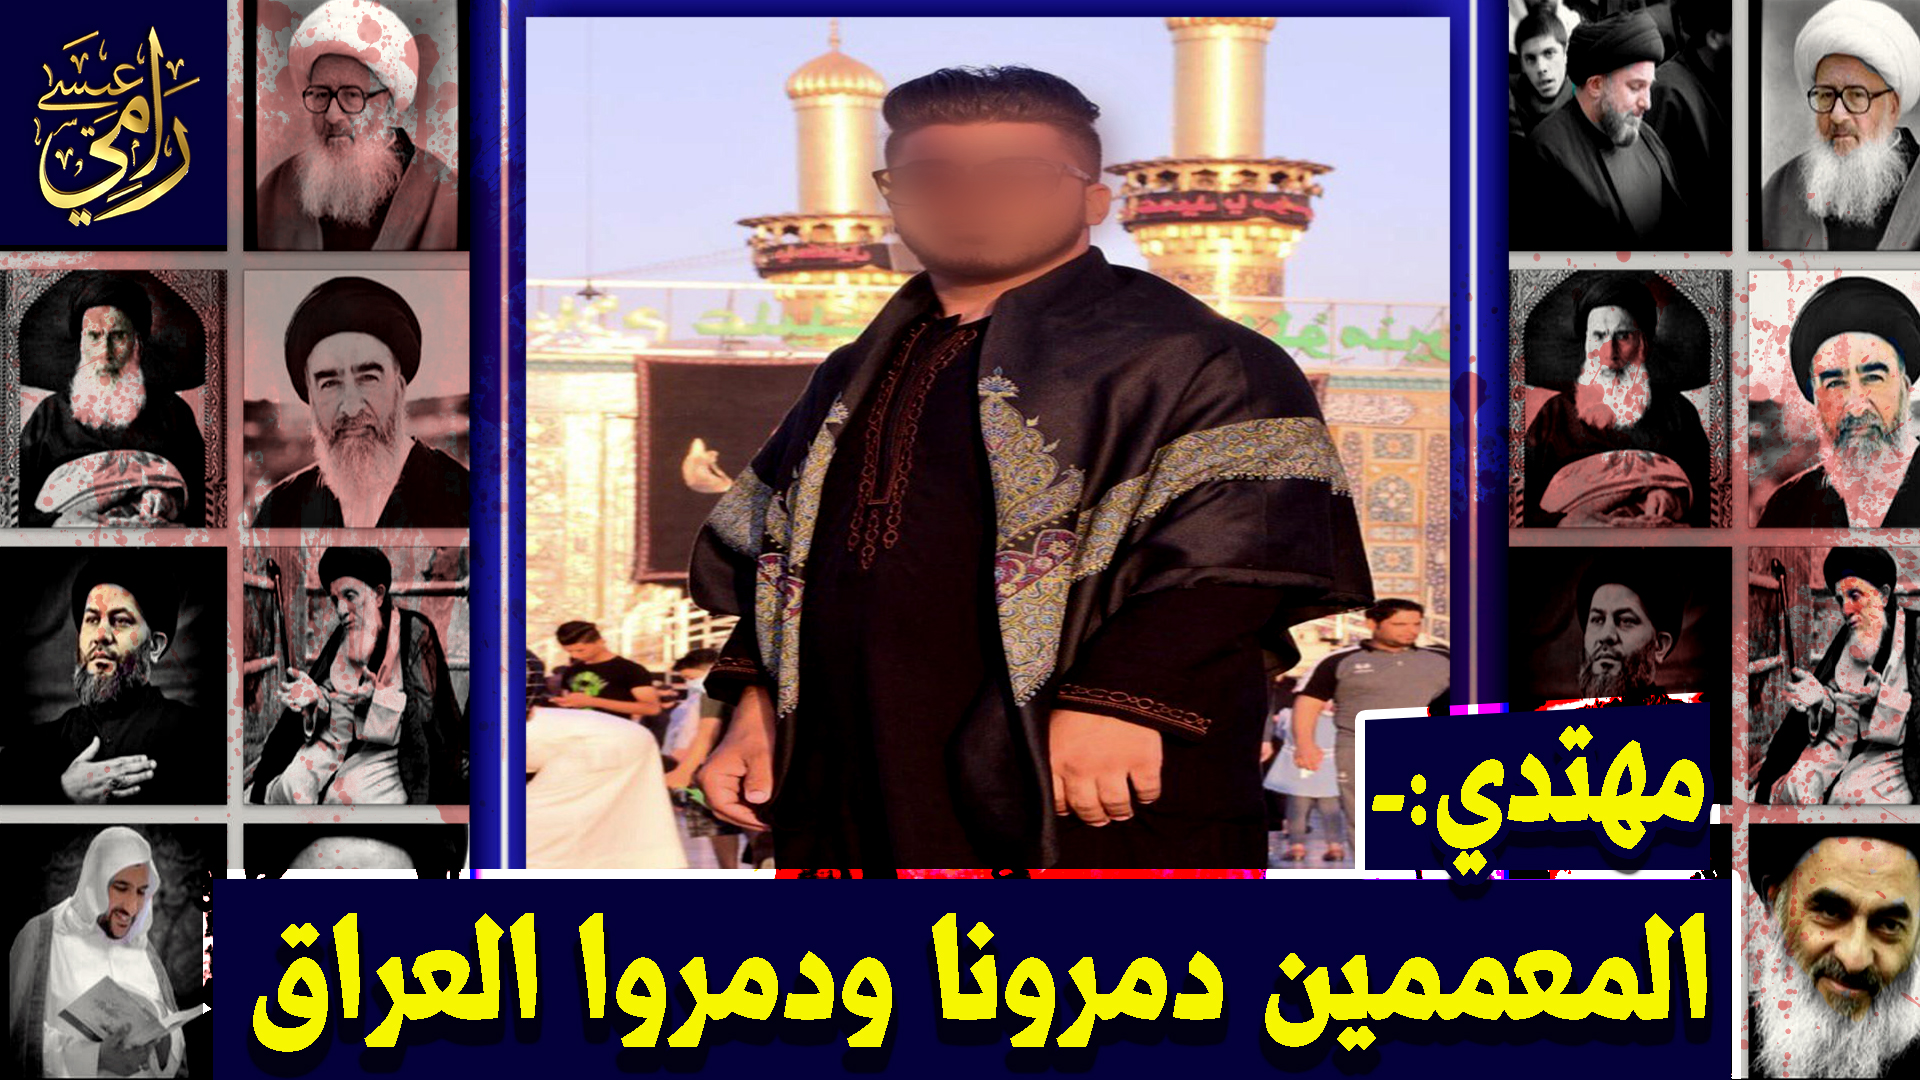 بالفيديو.. مهتدي عراقي: يا شيعة أنقذوا أنفسكم من النار!